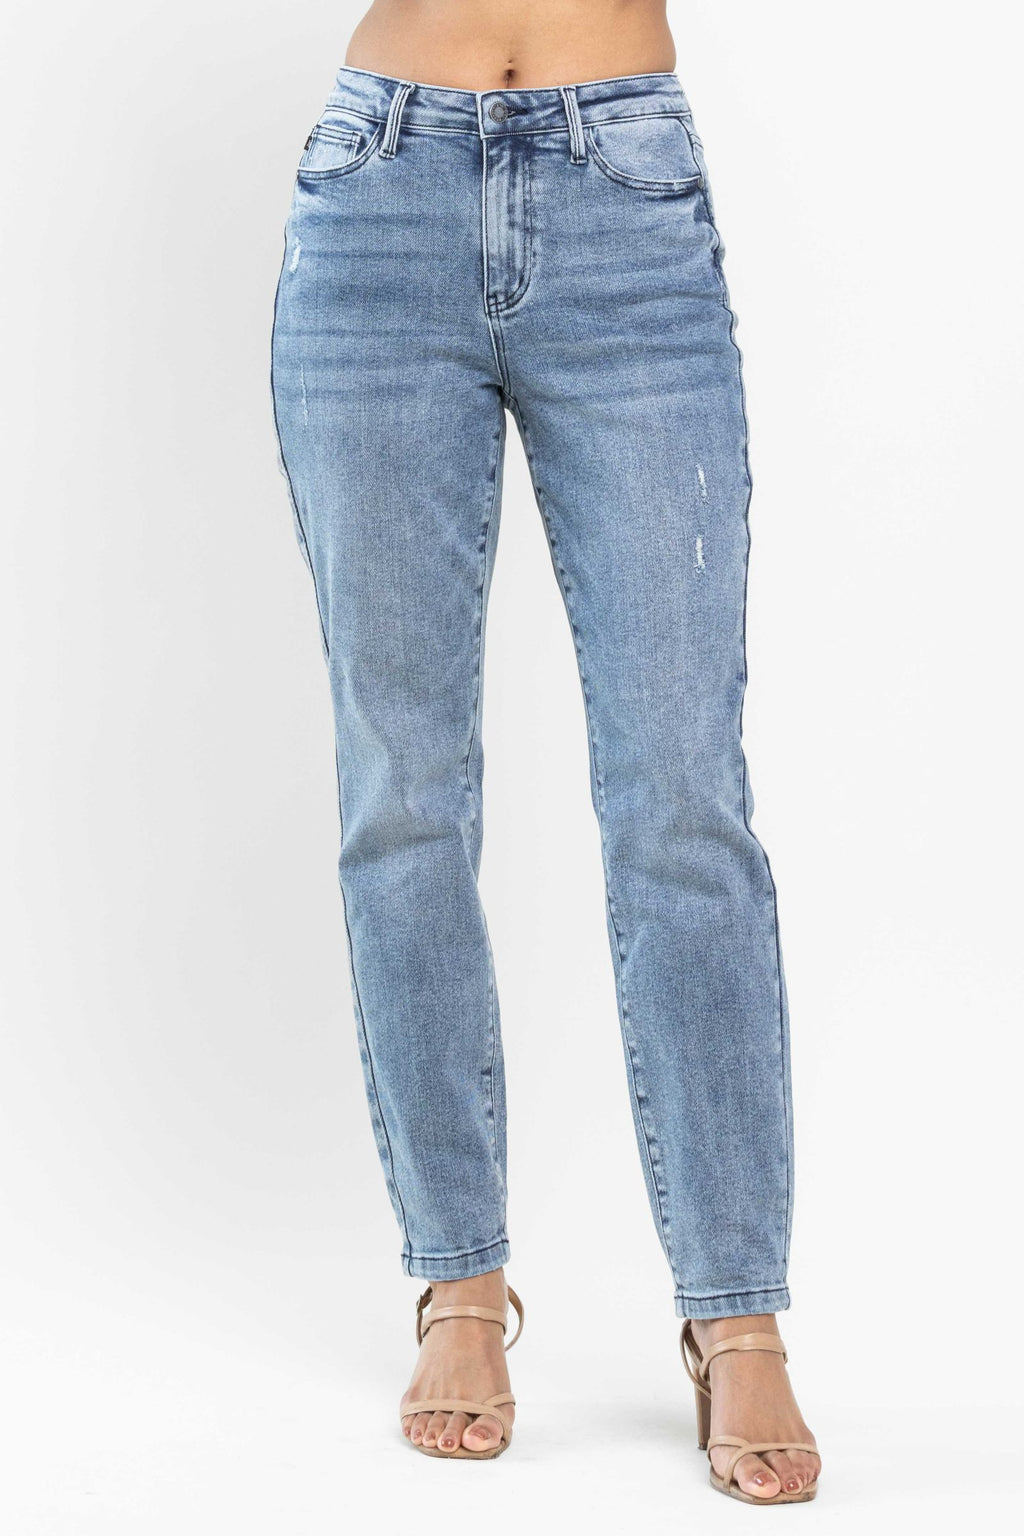 Judy Blue High Waist Control Top Release Hem Slim Bootcut Jeans